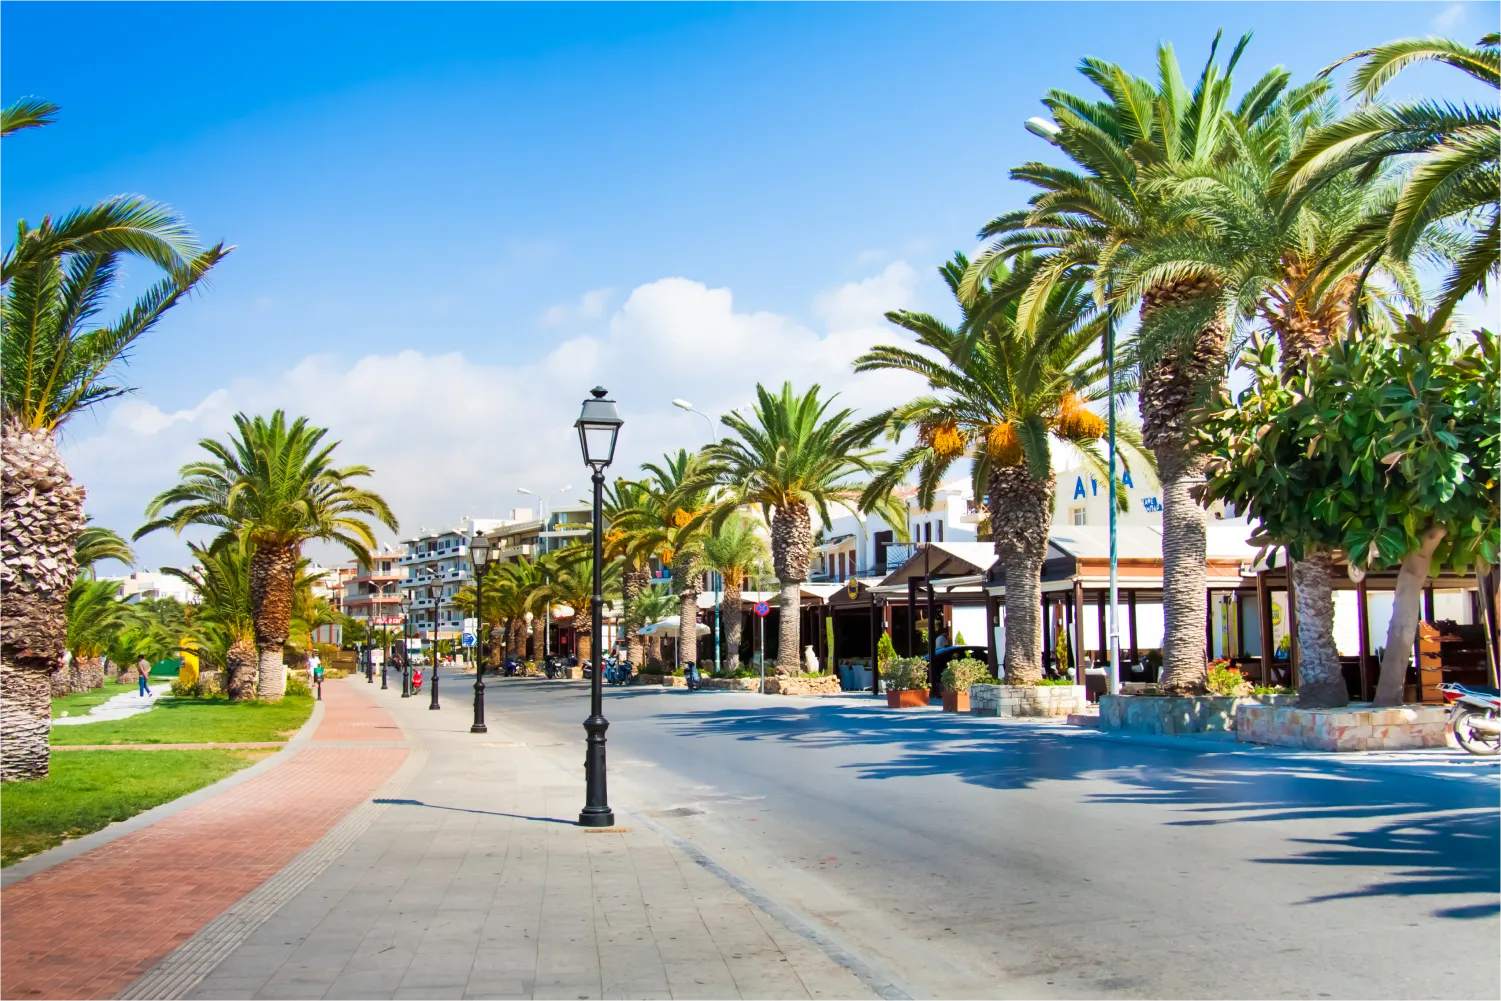 Rue touristique avec palmiers en bord de mer dans la vieille ville de Réthymnon